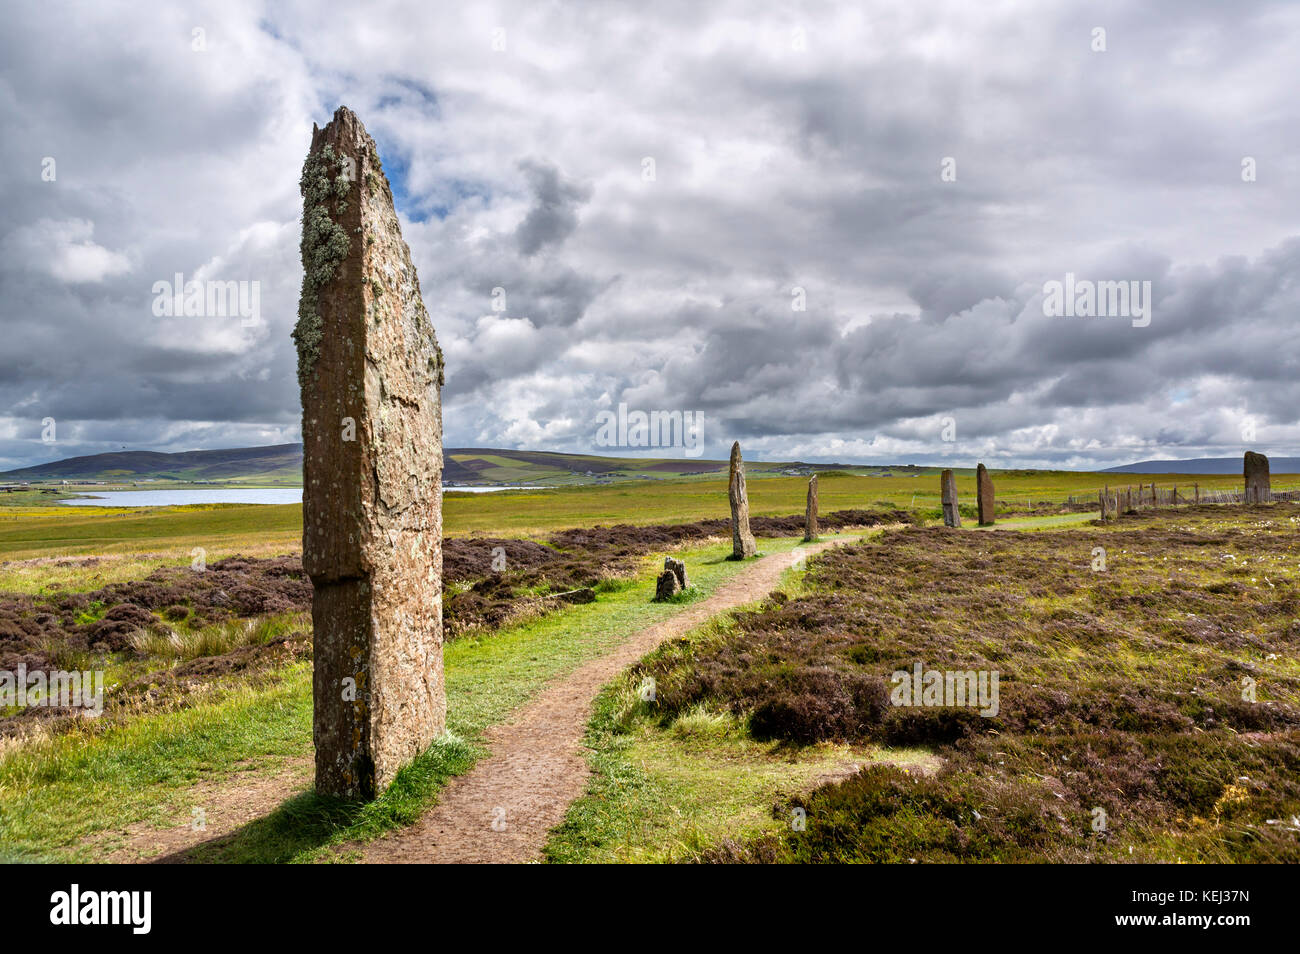 Anneau de Shetlands, Orkney. Cercle de pierres néolithiques, datant d'environ 2000 à 2500 avant J.-C., Mainland, Orkney, Scotland, UK Banque D'Images